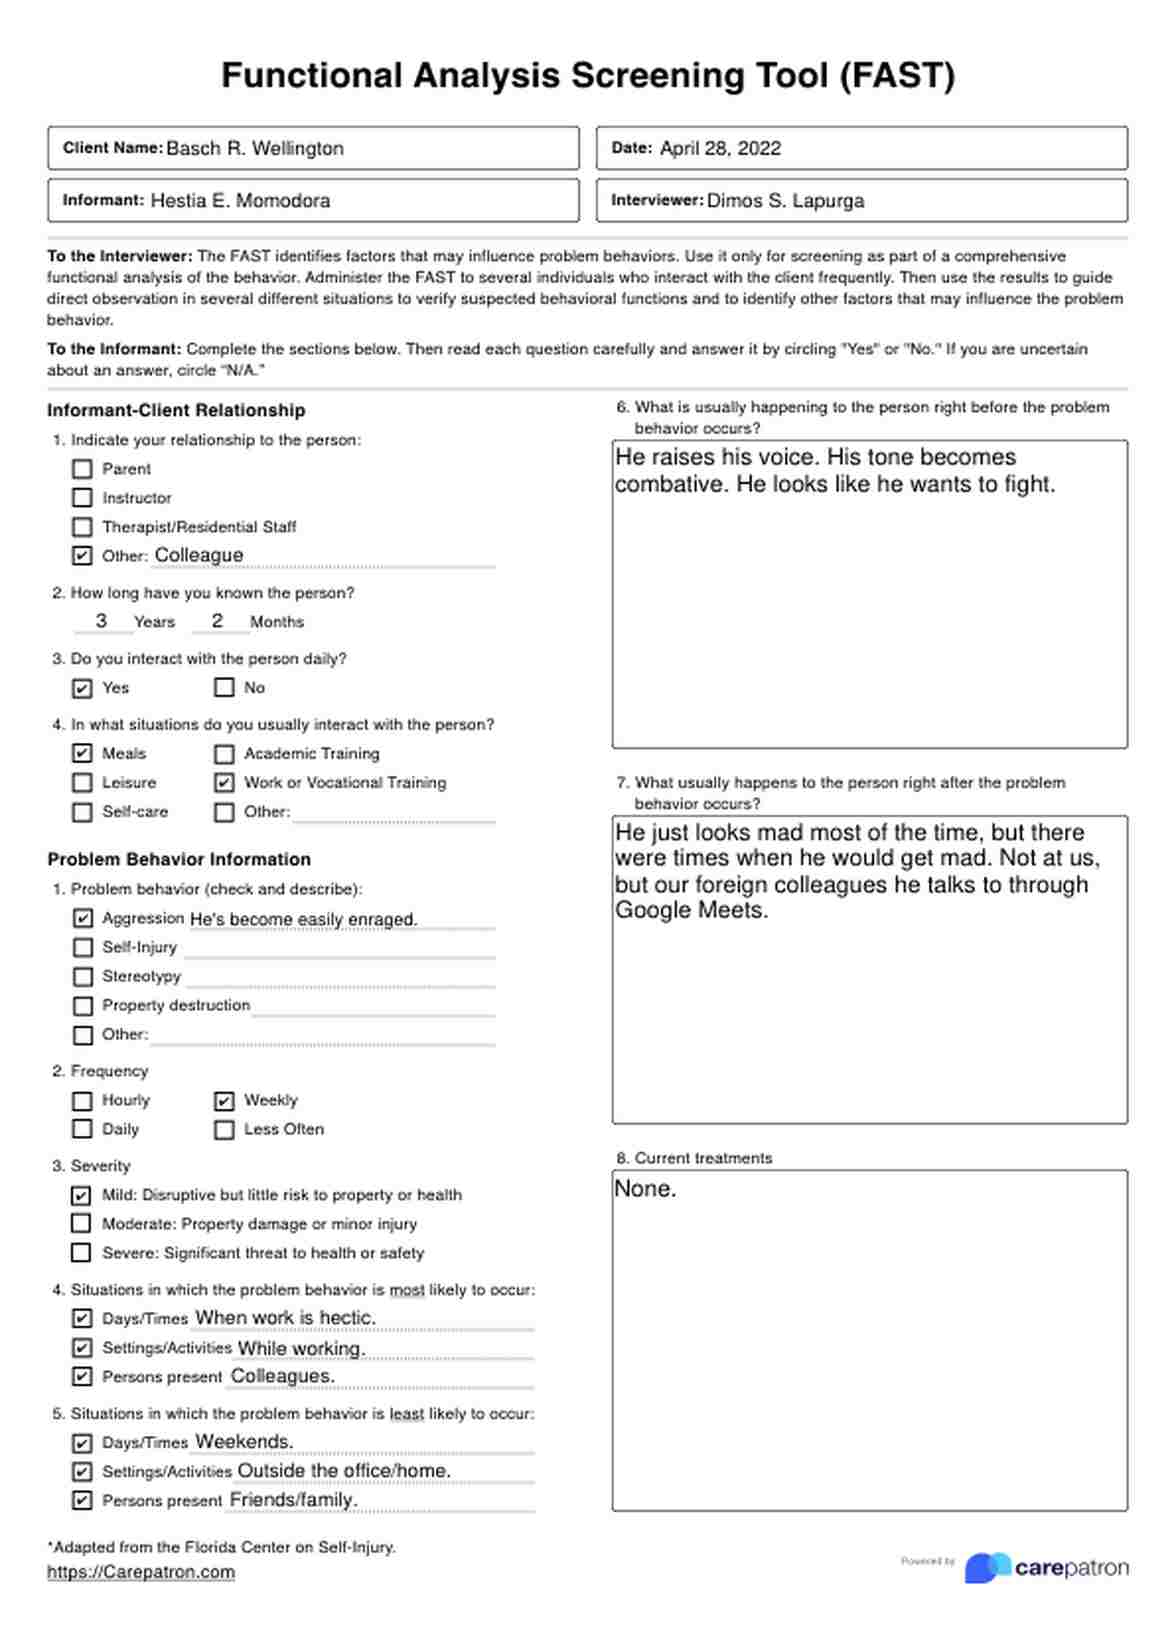 Herramienta de Estadificación de Evaluación Funcional (FAST) PDF Example